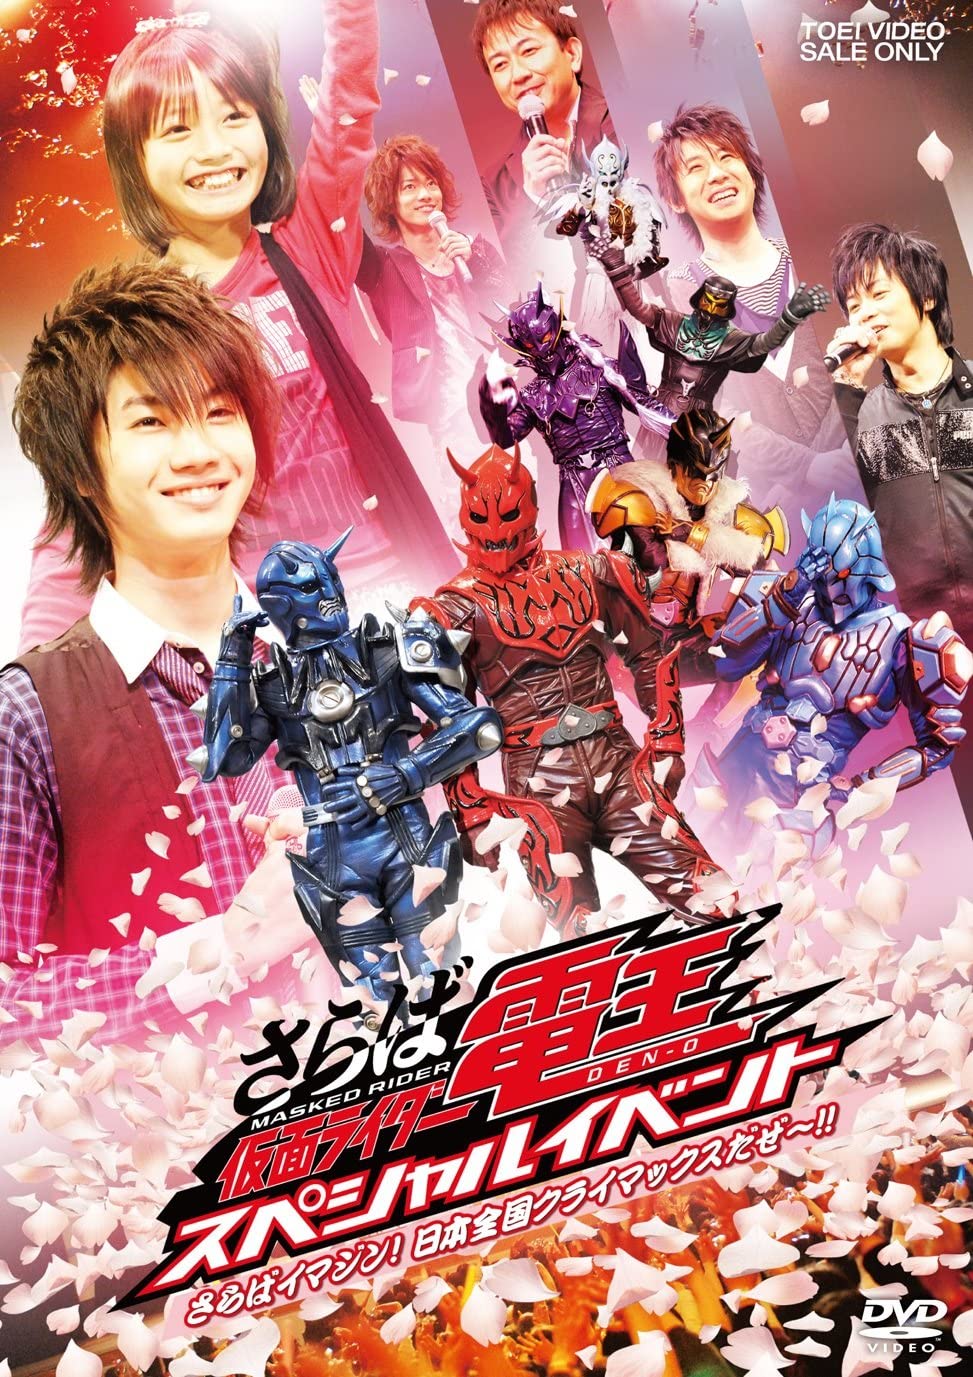 Saraba Kamen Rider Den-O: Special Event -Saraba Imagin! At Climax